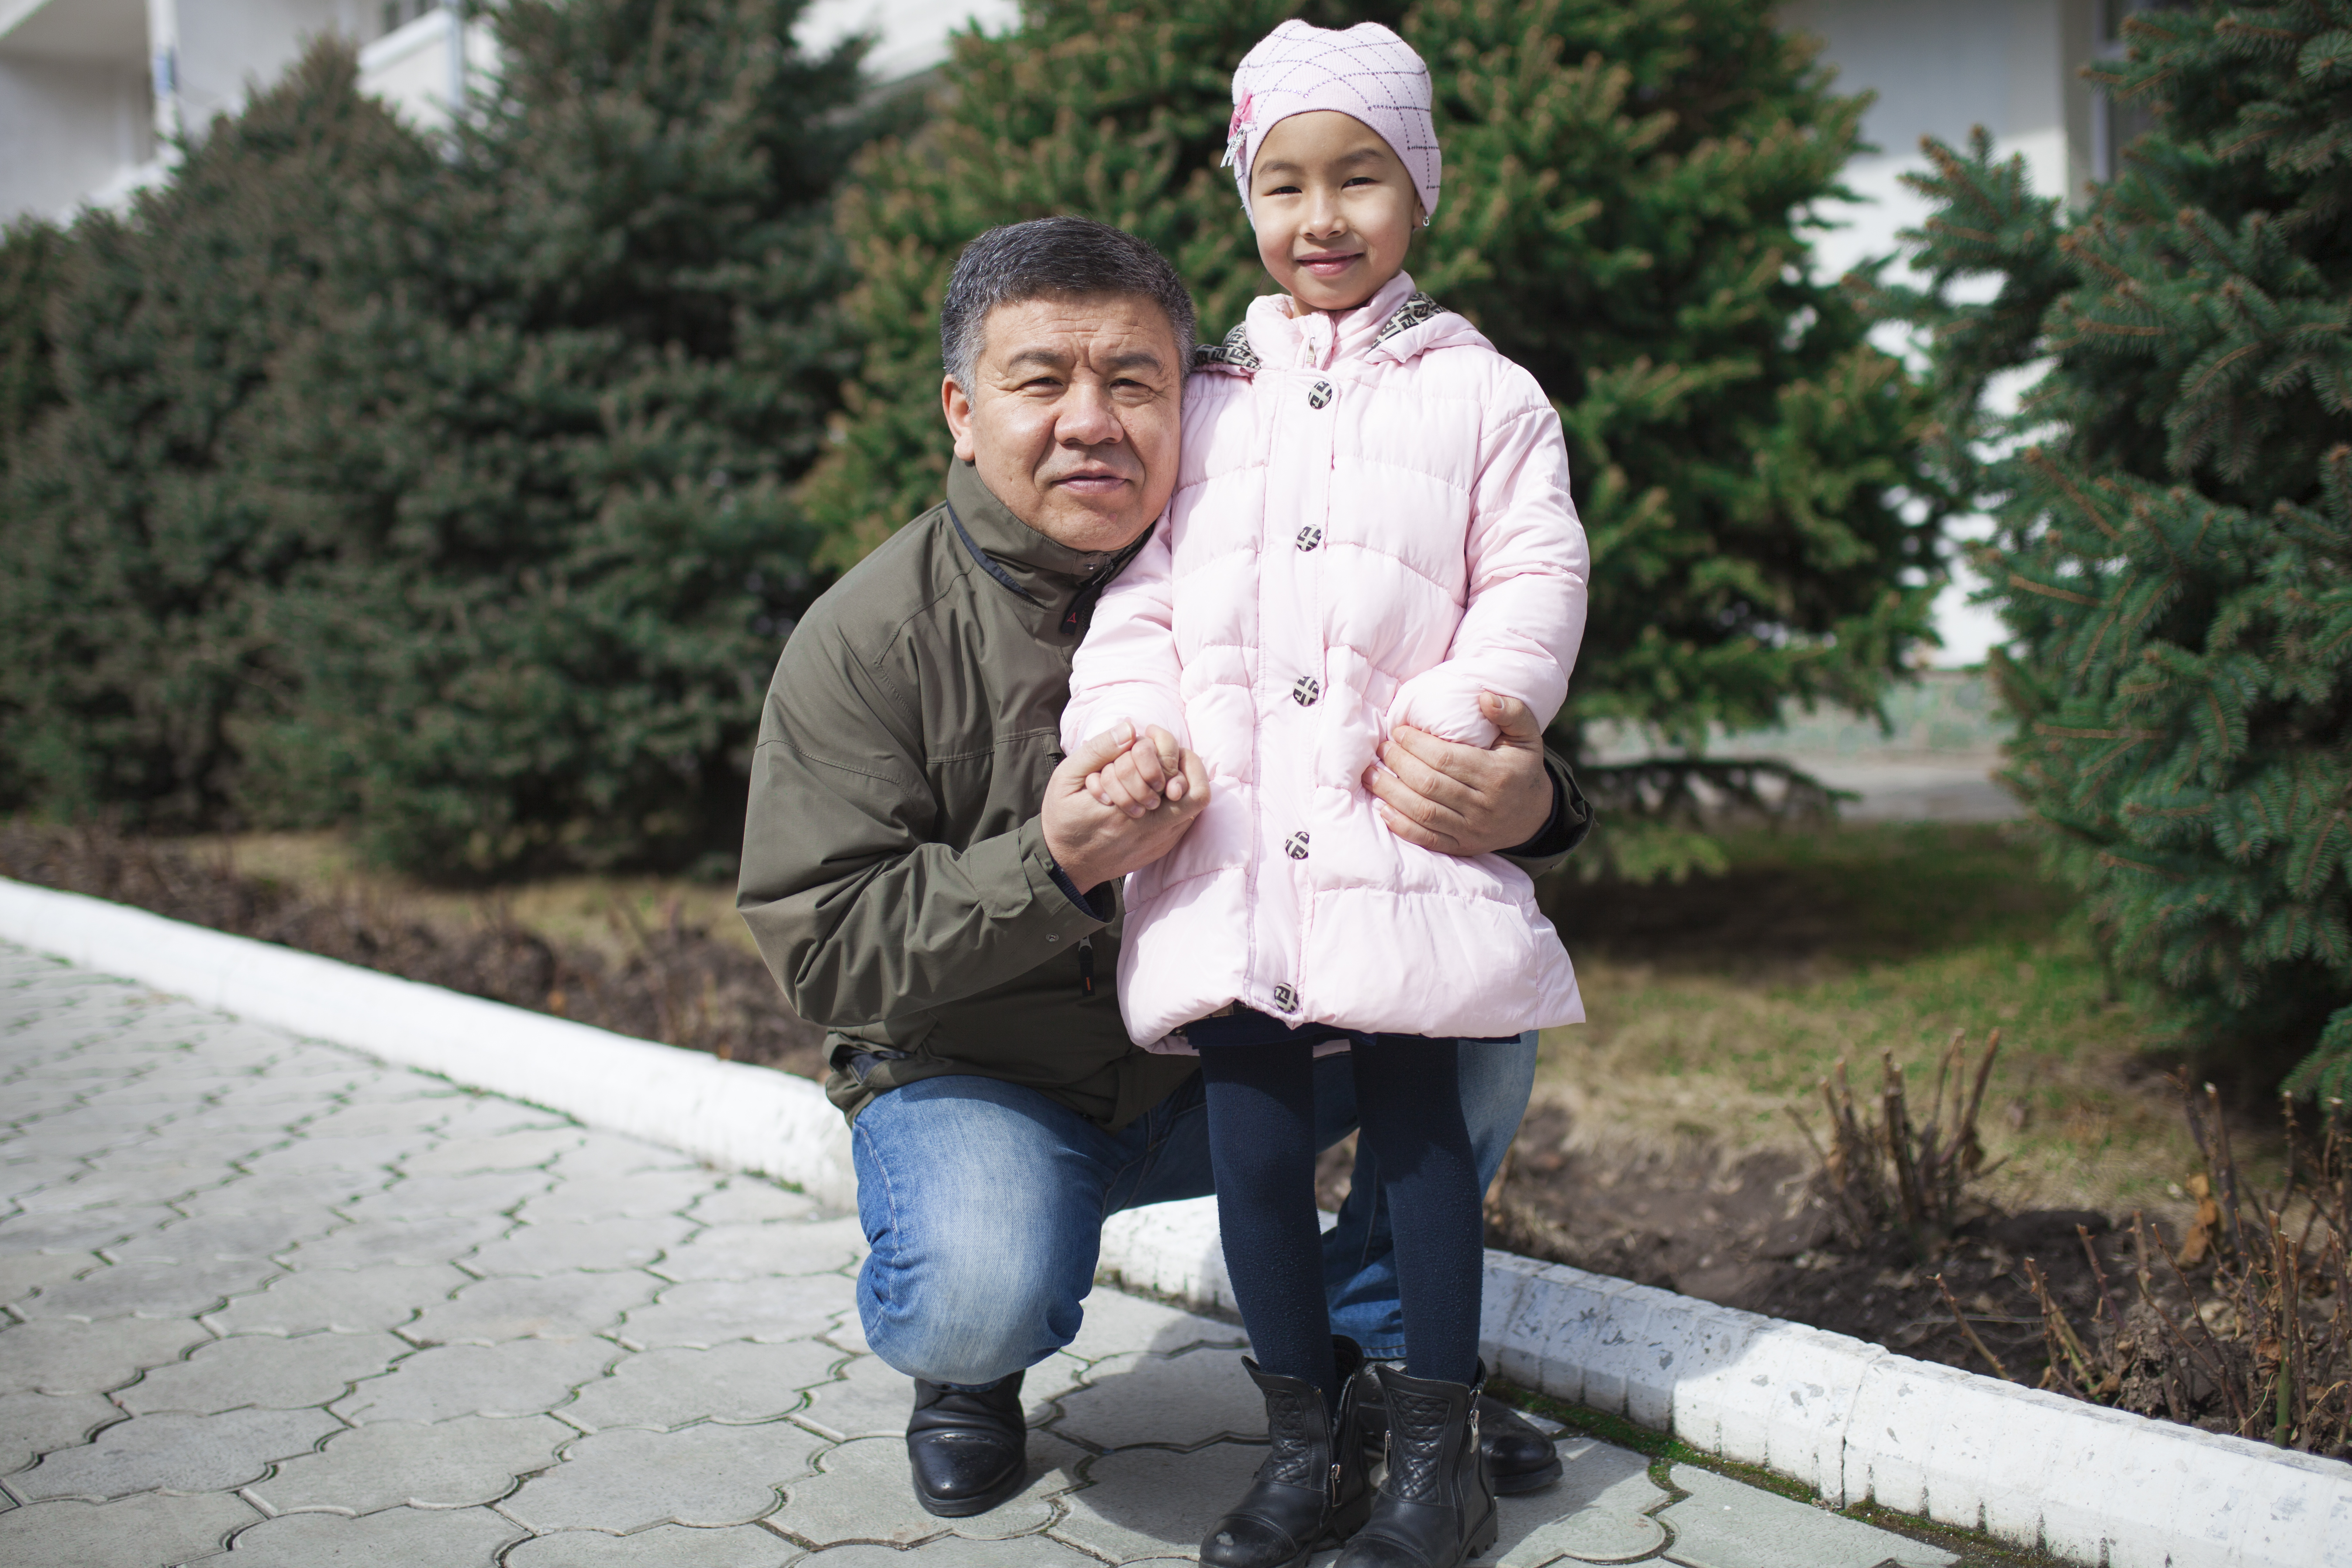  Алмамбет Шыкмаматов, депутат от фракции «Ата Мекен», с дочерью Акылай